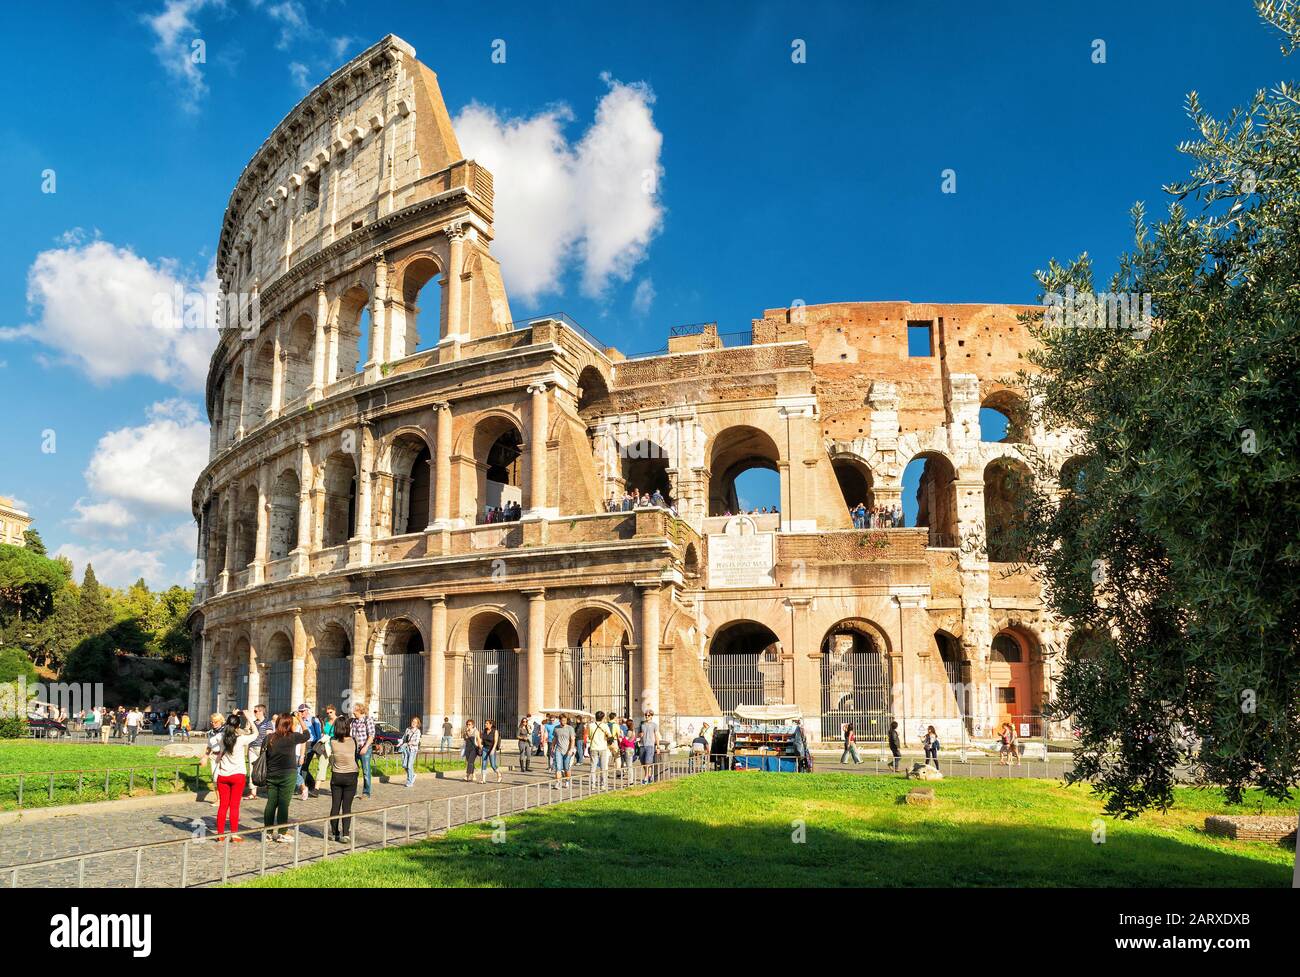 ROM - 4. OKTOBER 2012: Touristen, die das Kolosseum besuchen. Das Kolosseum ist eine bedeutende Touristenattraktion in Rom. Stockfoto